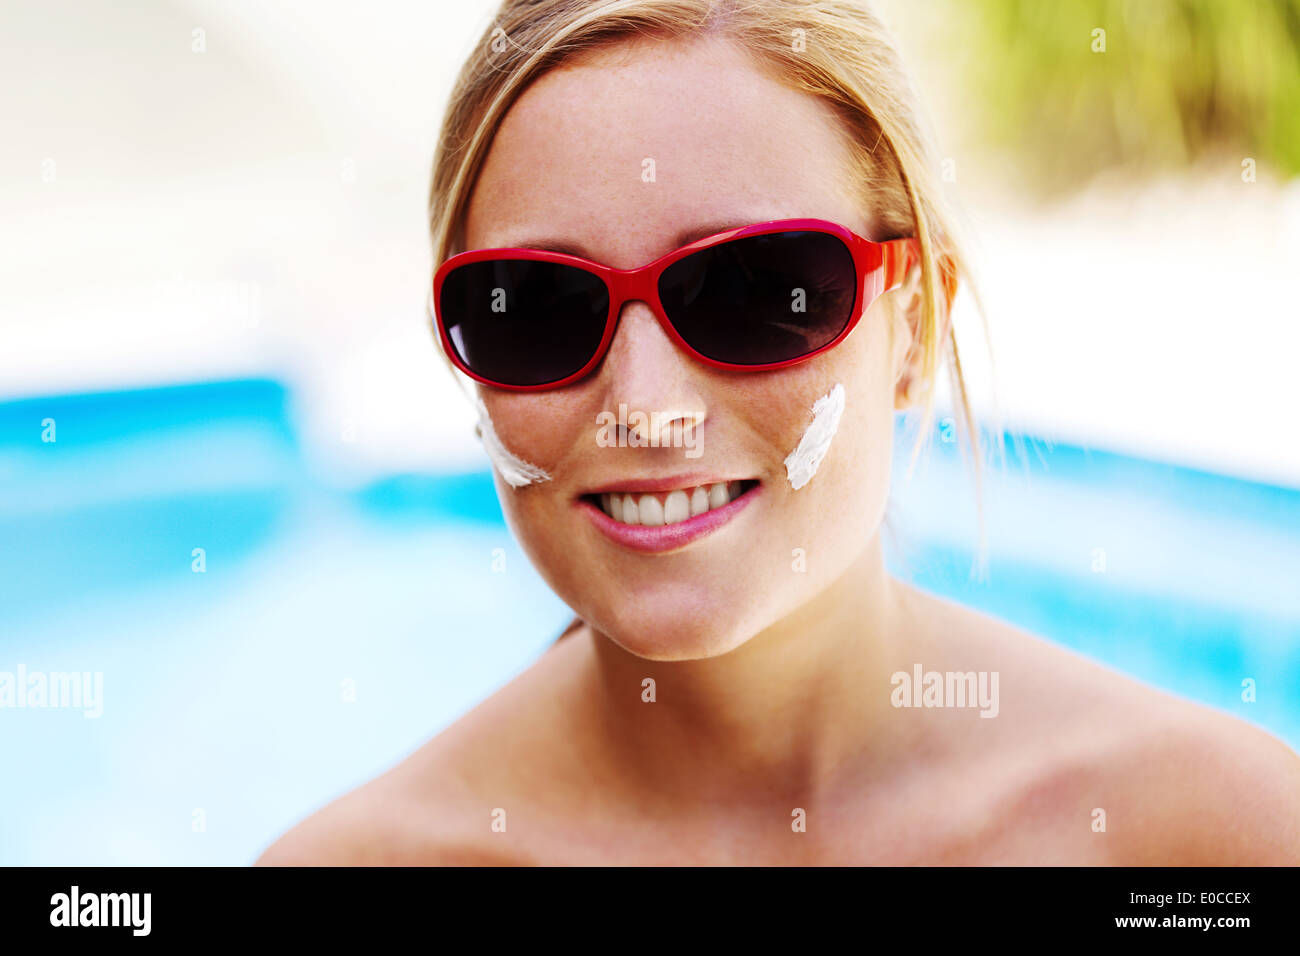 Mujer joven en verano con gafas de sol y crema de los Suns, Junge Frau Im Sommer mit Sonnenbrille und Sonnen Creme Foto de stock